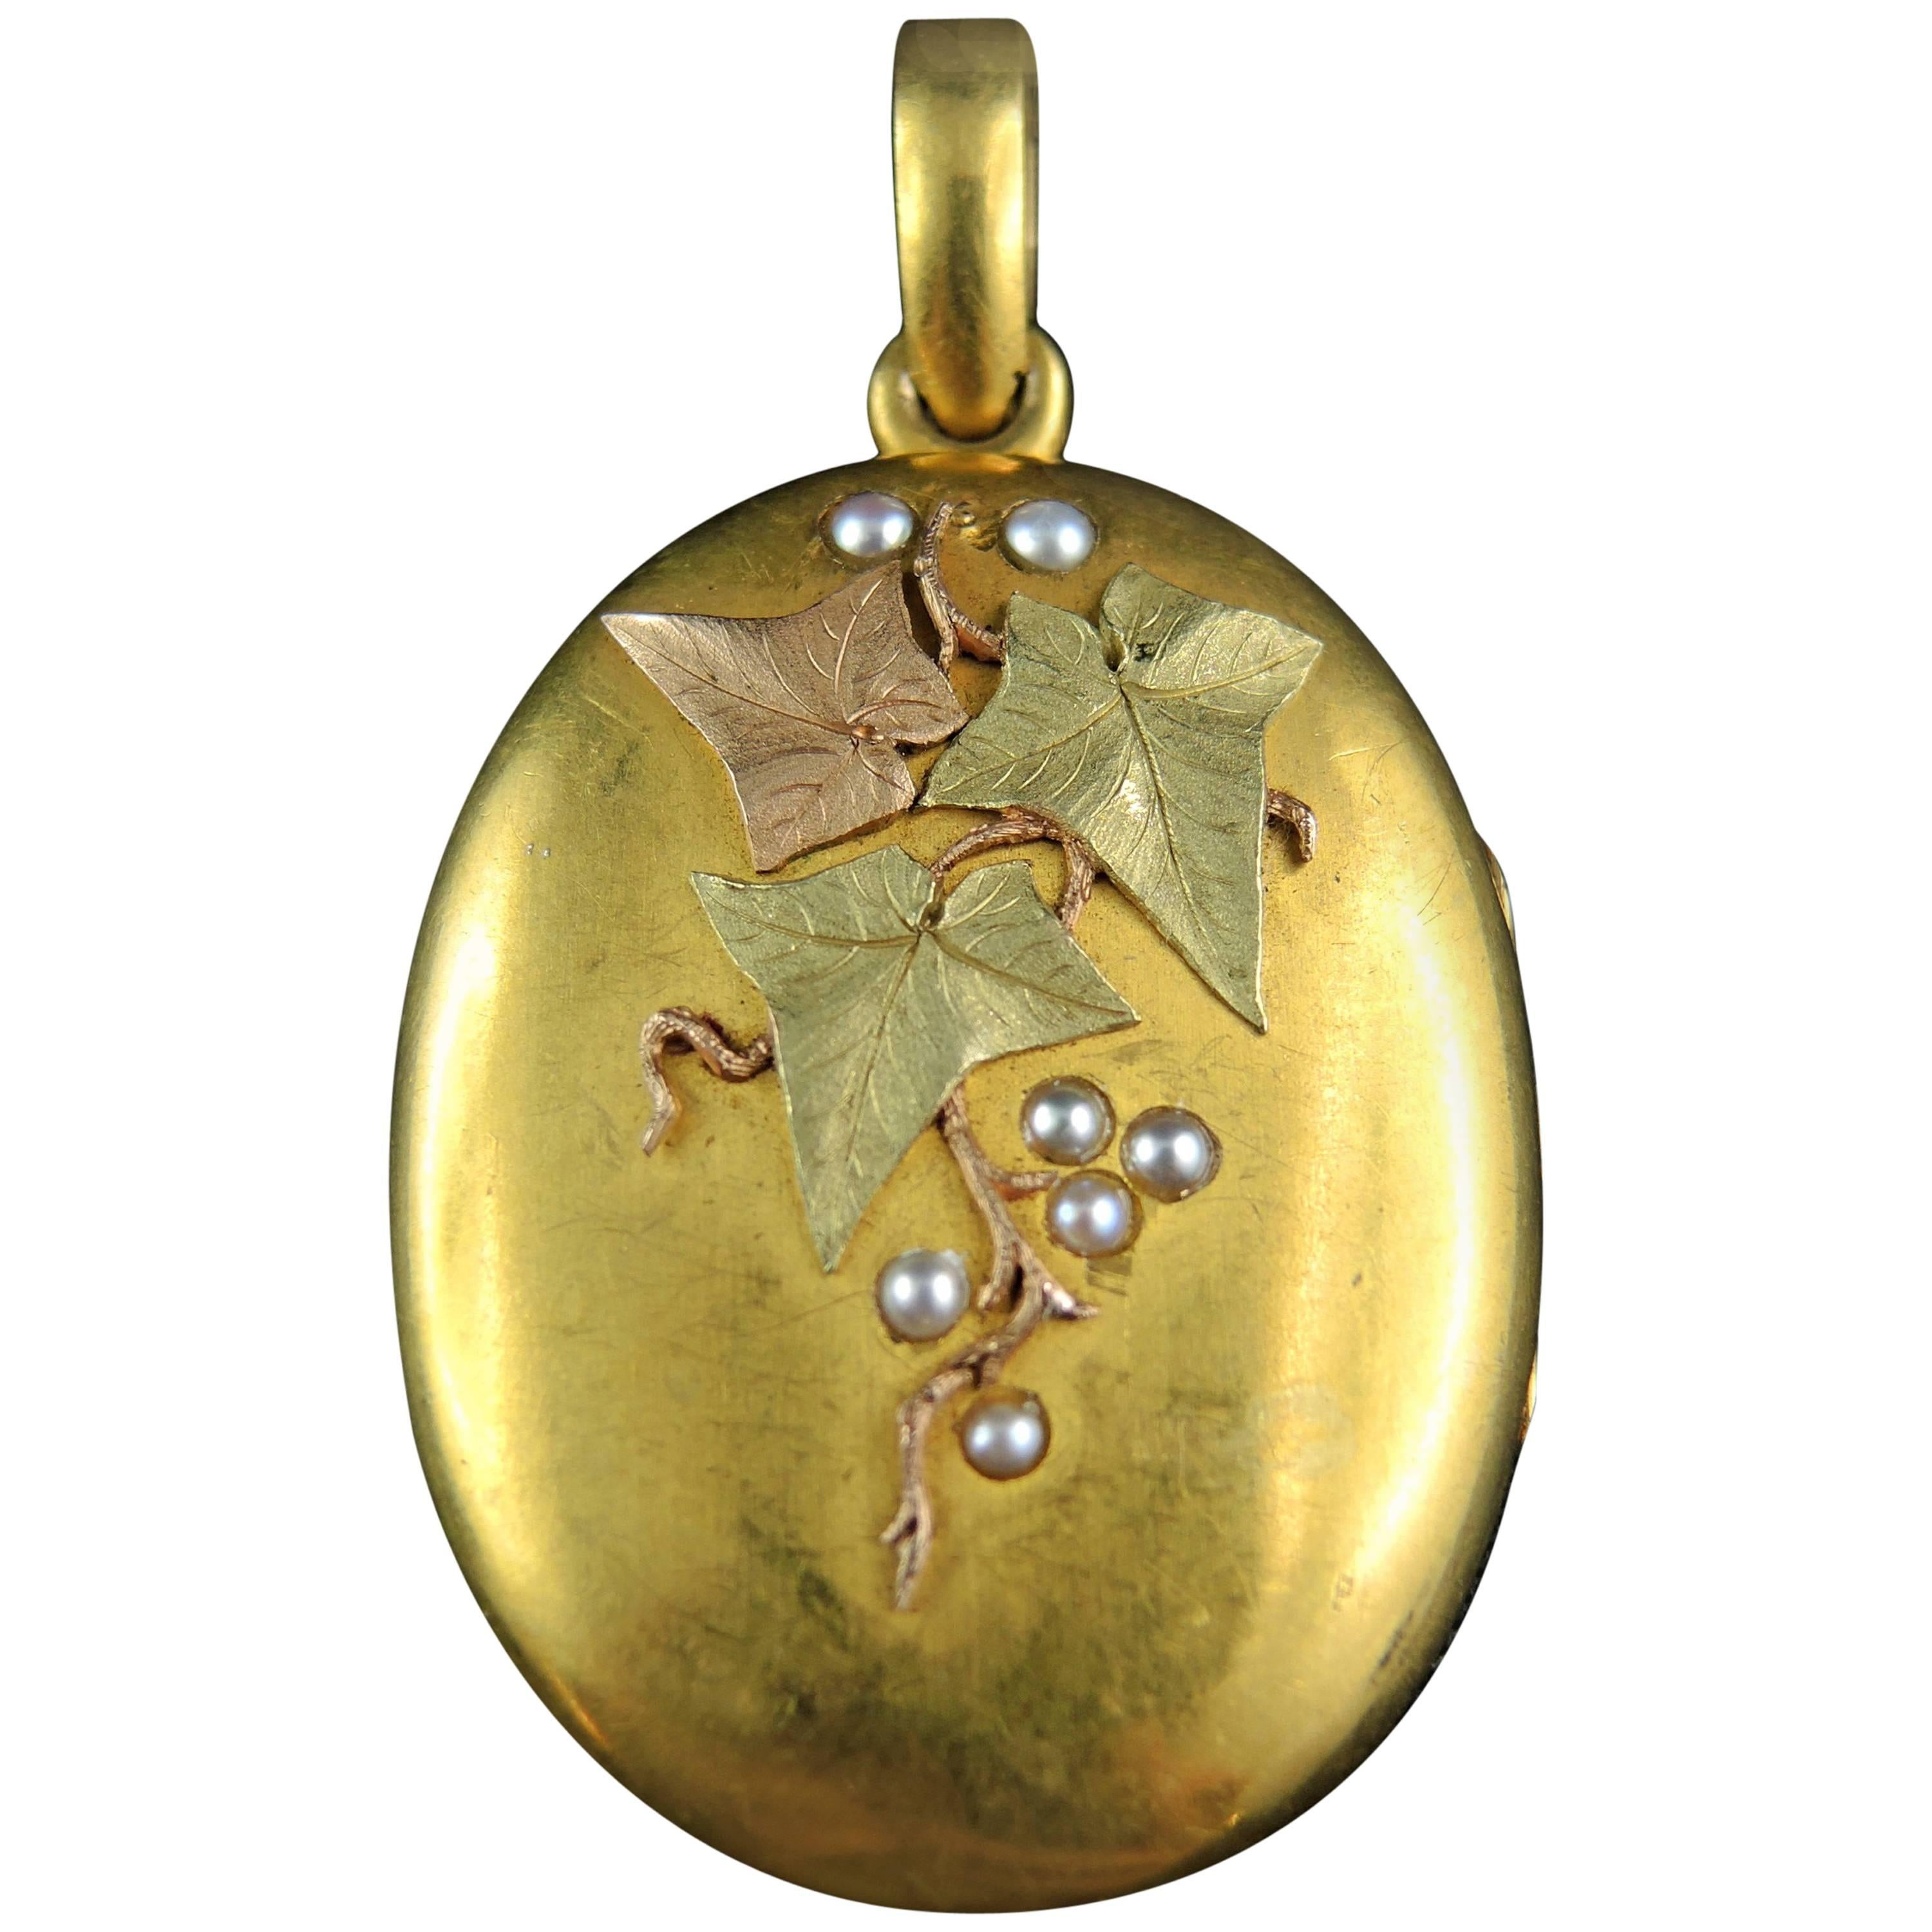 Antique French Gold Locket with Vine Leaf Design